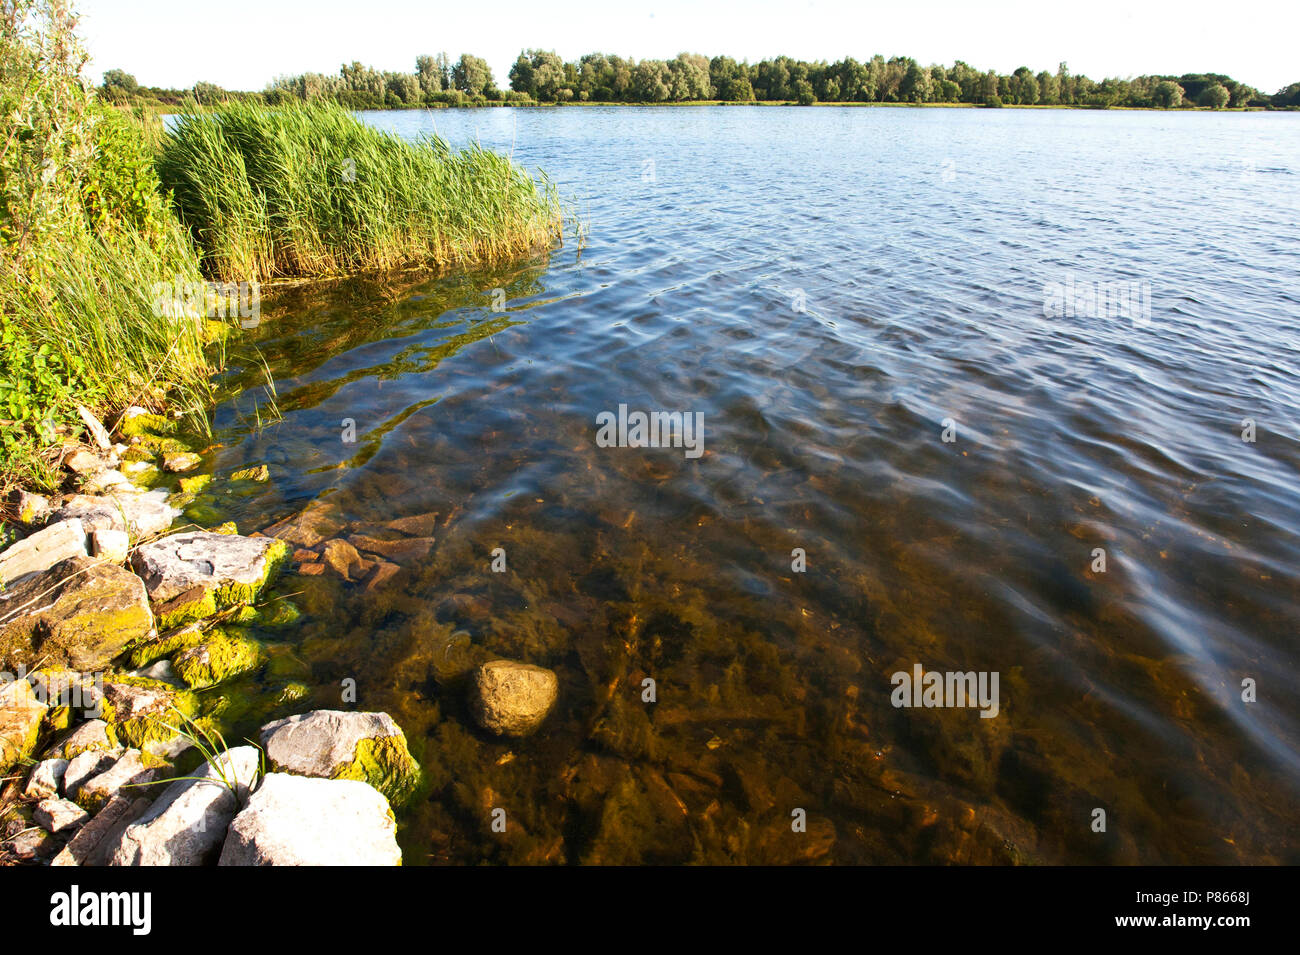 Meer in het recreatiegebied Twiske, Noord-Holland; Lake in recreation area Twikse, Netherlands Stock Photo